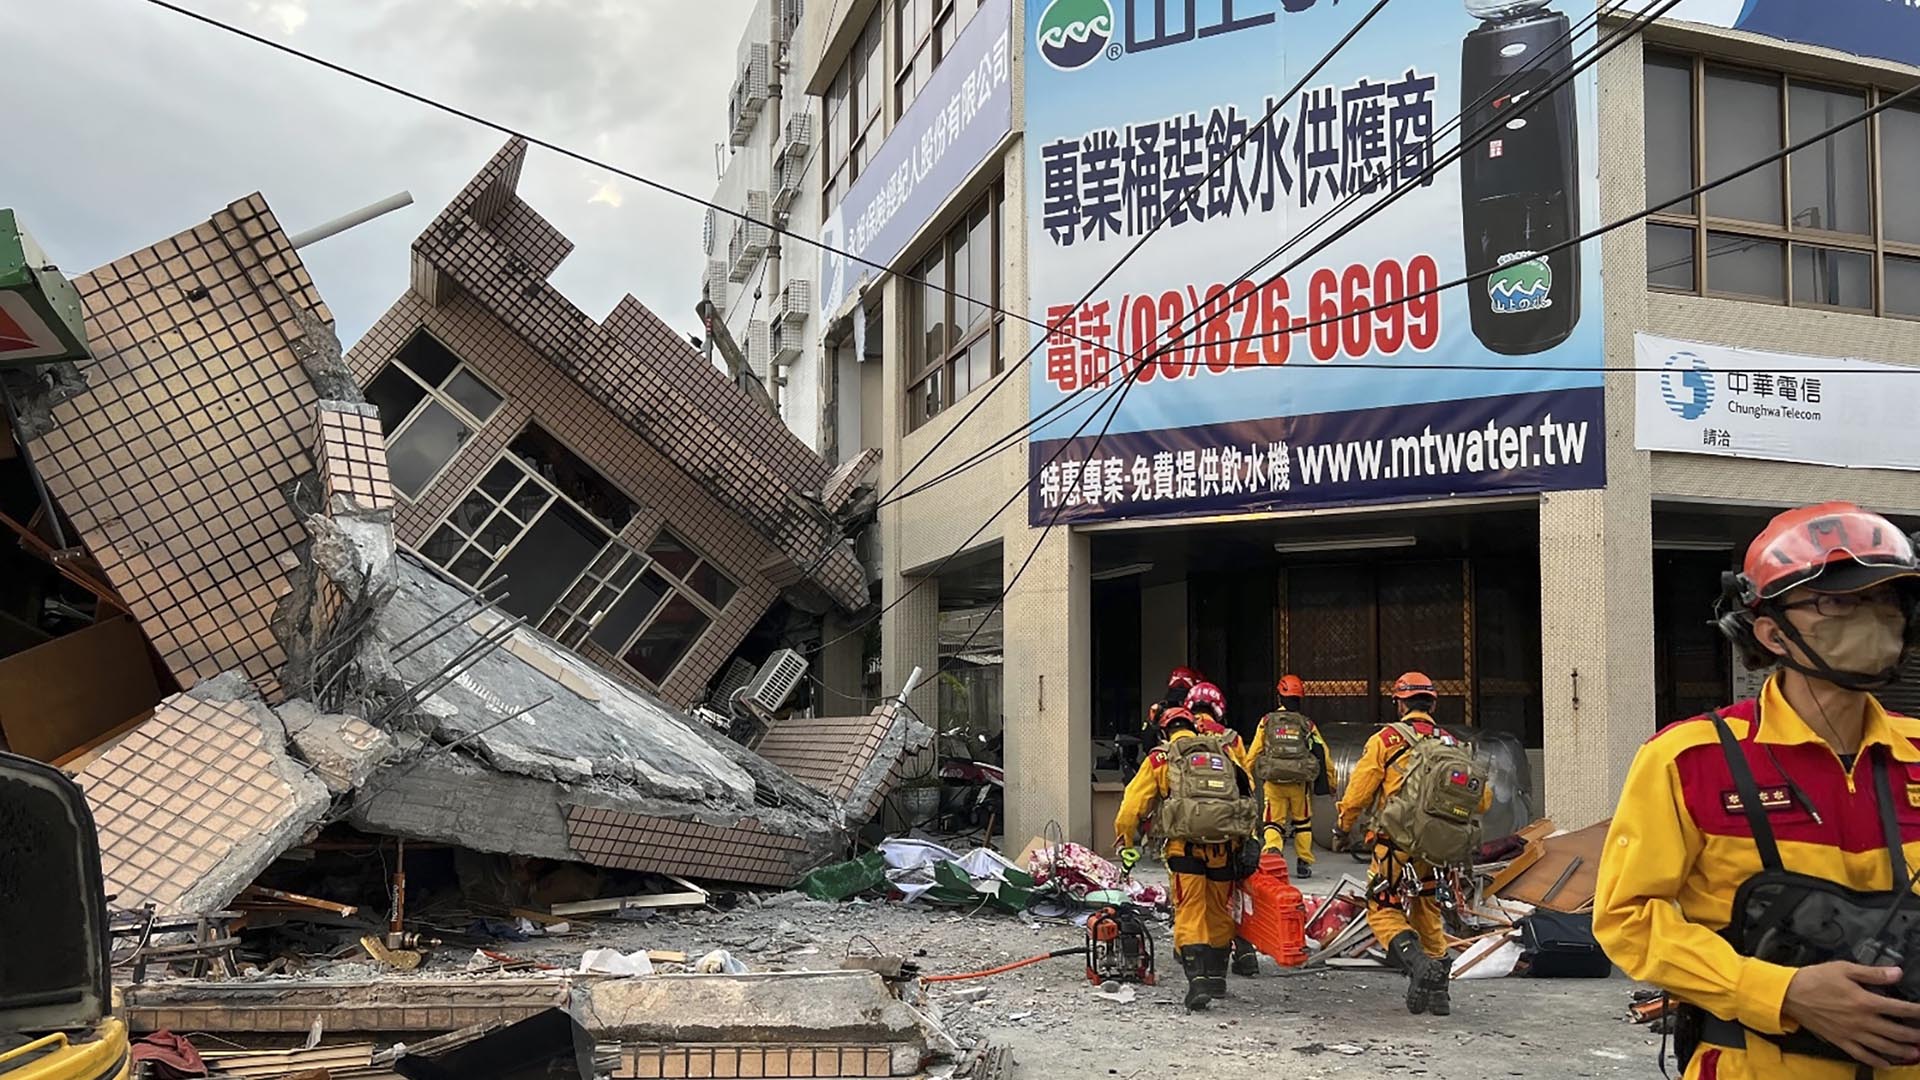 Un fuerte terremoto sacudió gran parte de Taiwán el domingo, derribando al menos un edificio y atrapando a dos personas dentro y derribando parte de un tren de pasajeros de sus vías en una estación.(Hualien County Fire Department via AP)